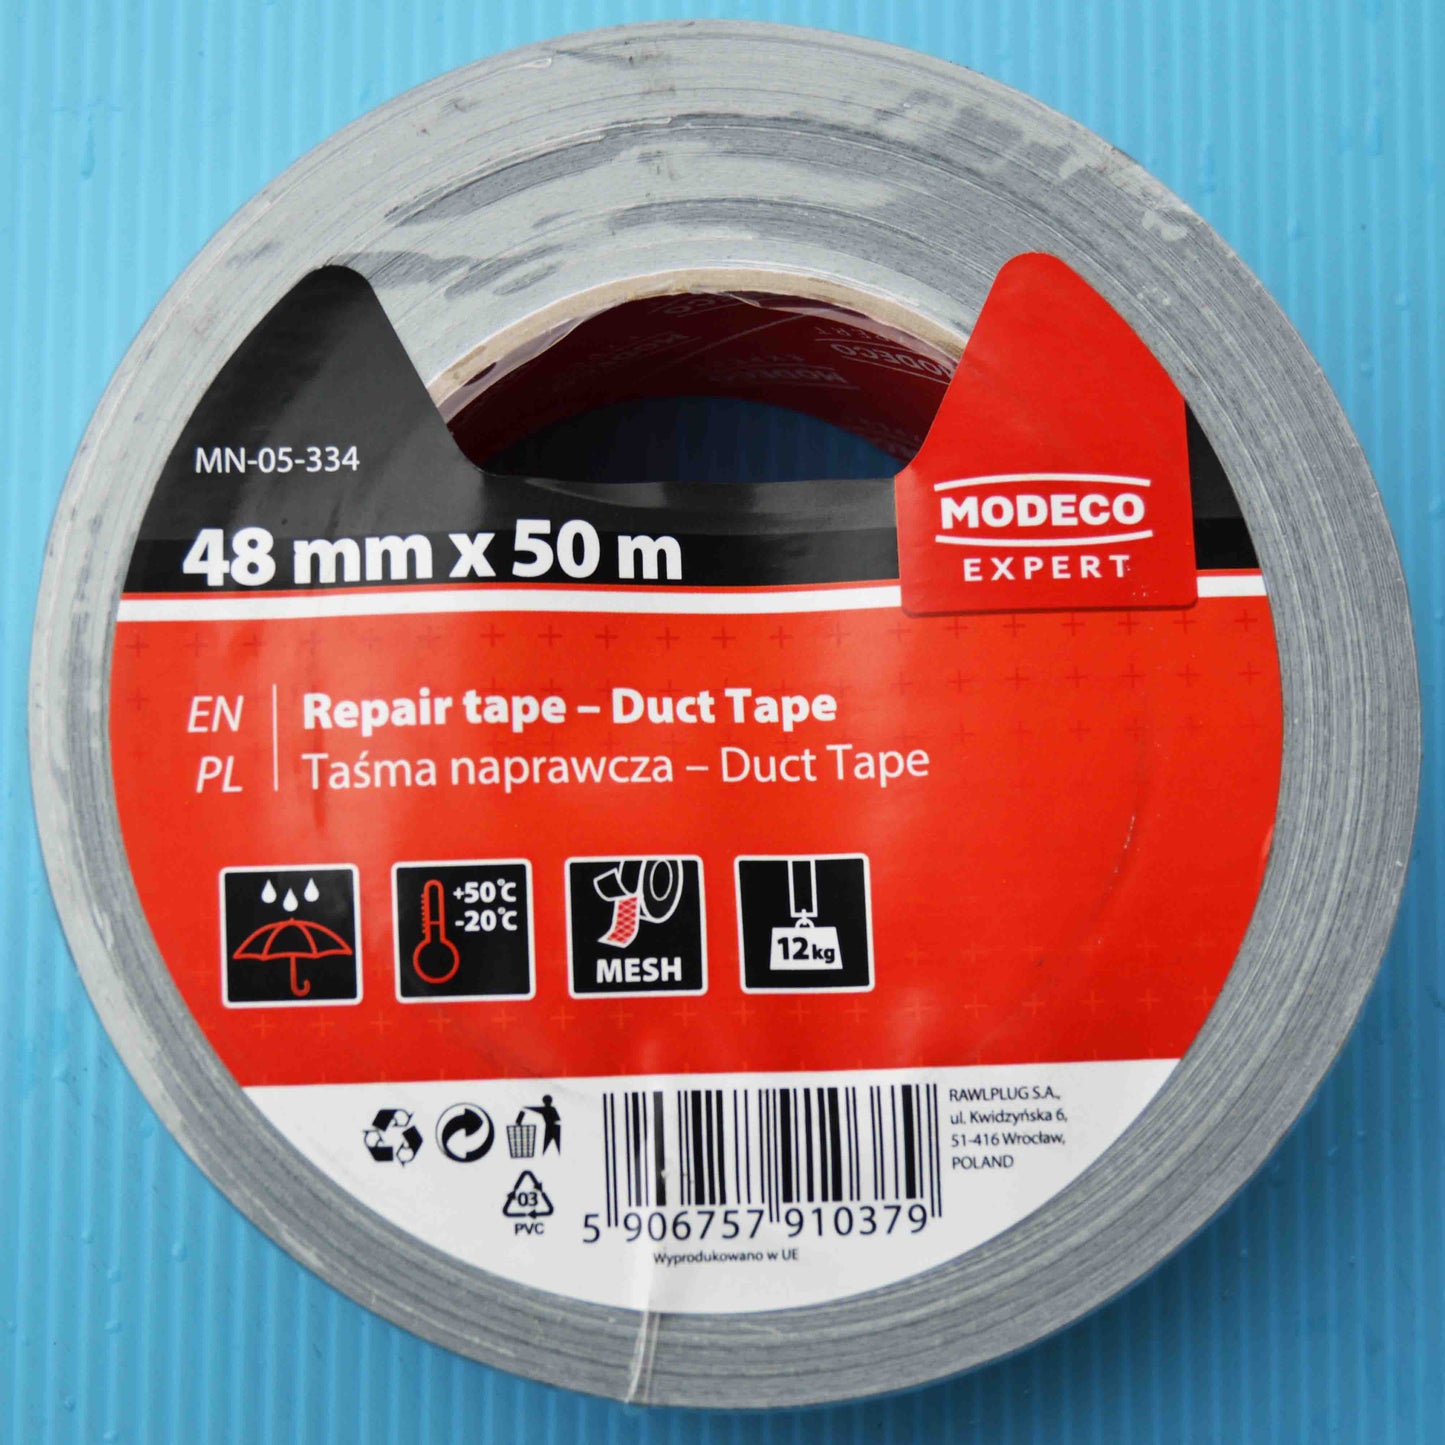 Heavy duty duct tape 48mm x 50m